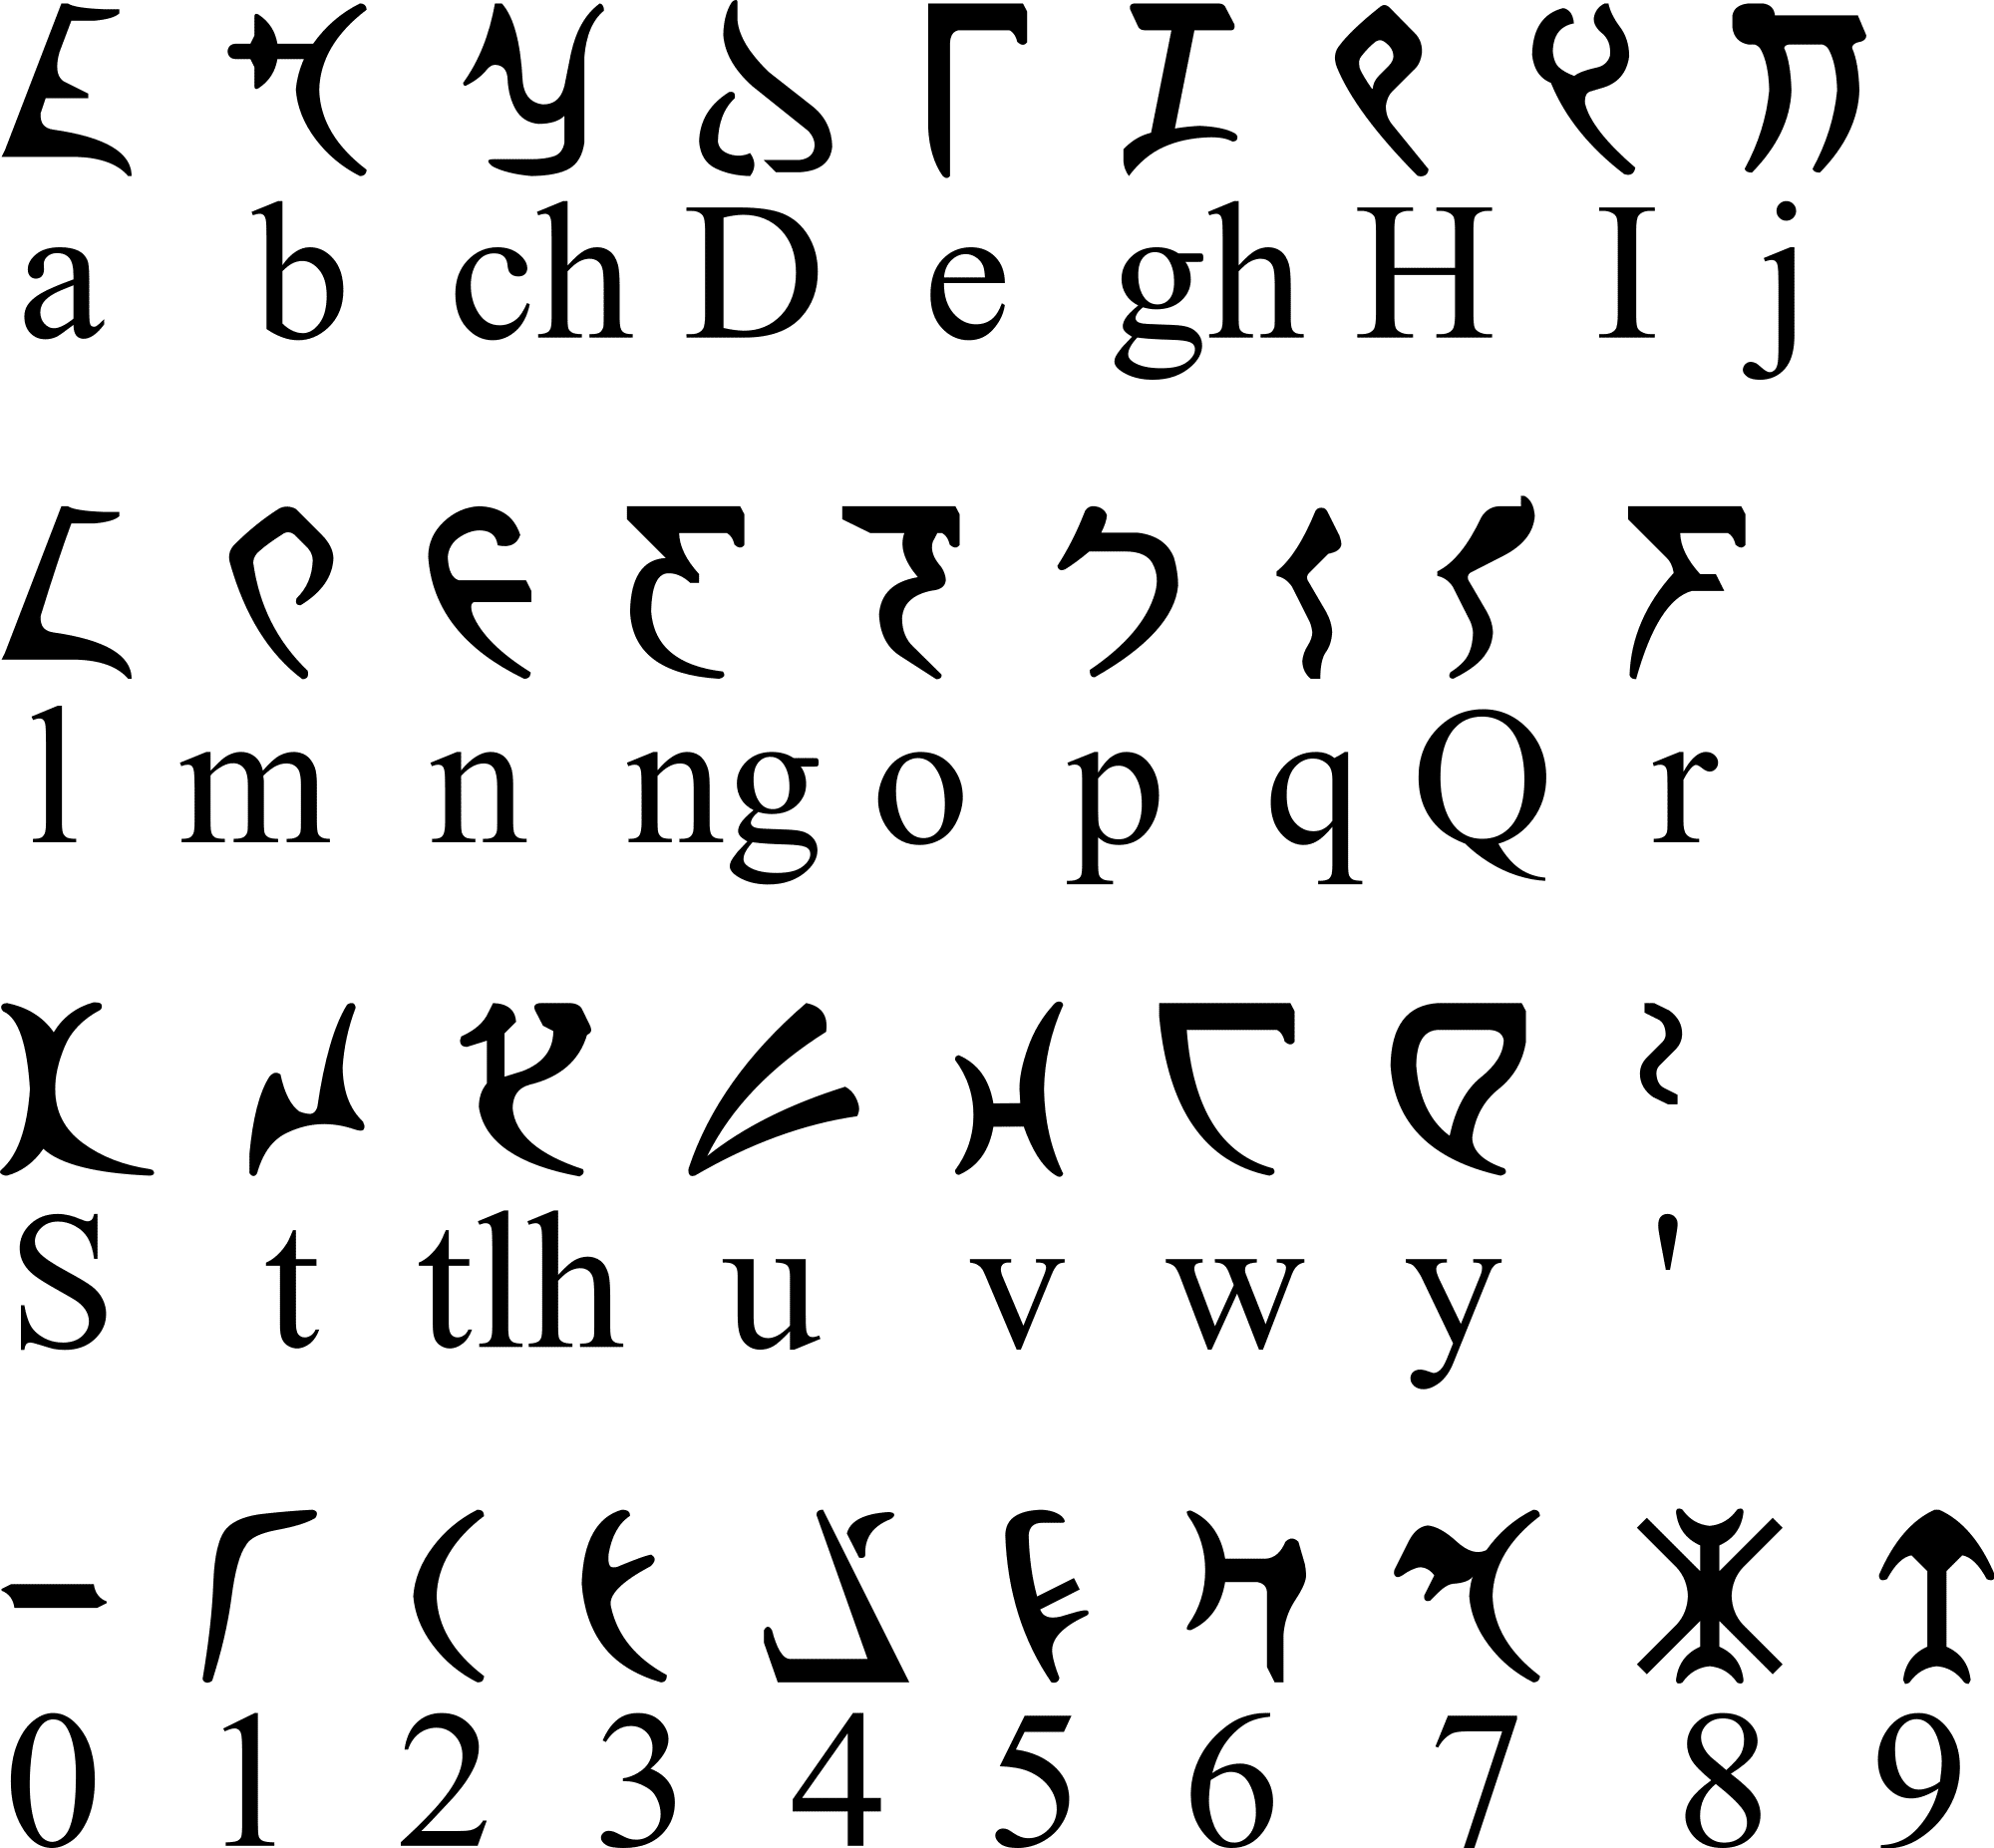 Шрифт викингов. Клингонский язык алфавит. Клингонский язык письменность. Вымышленные языки. Инопланетный шрифт.